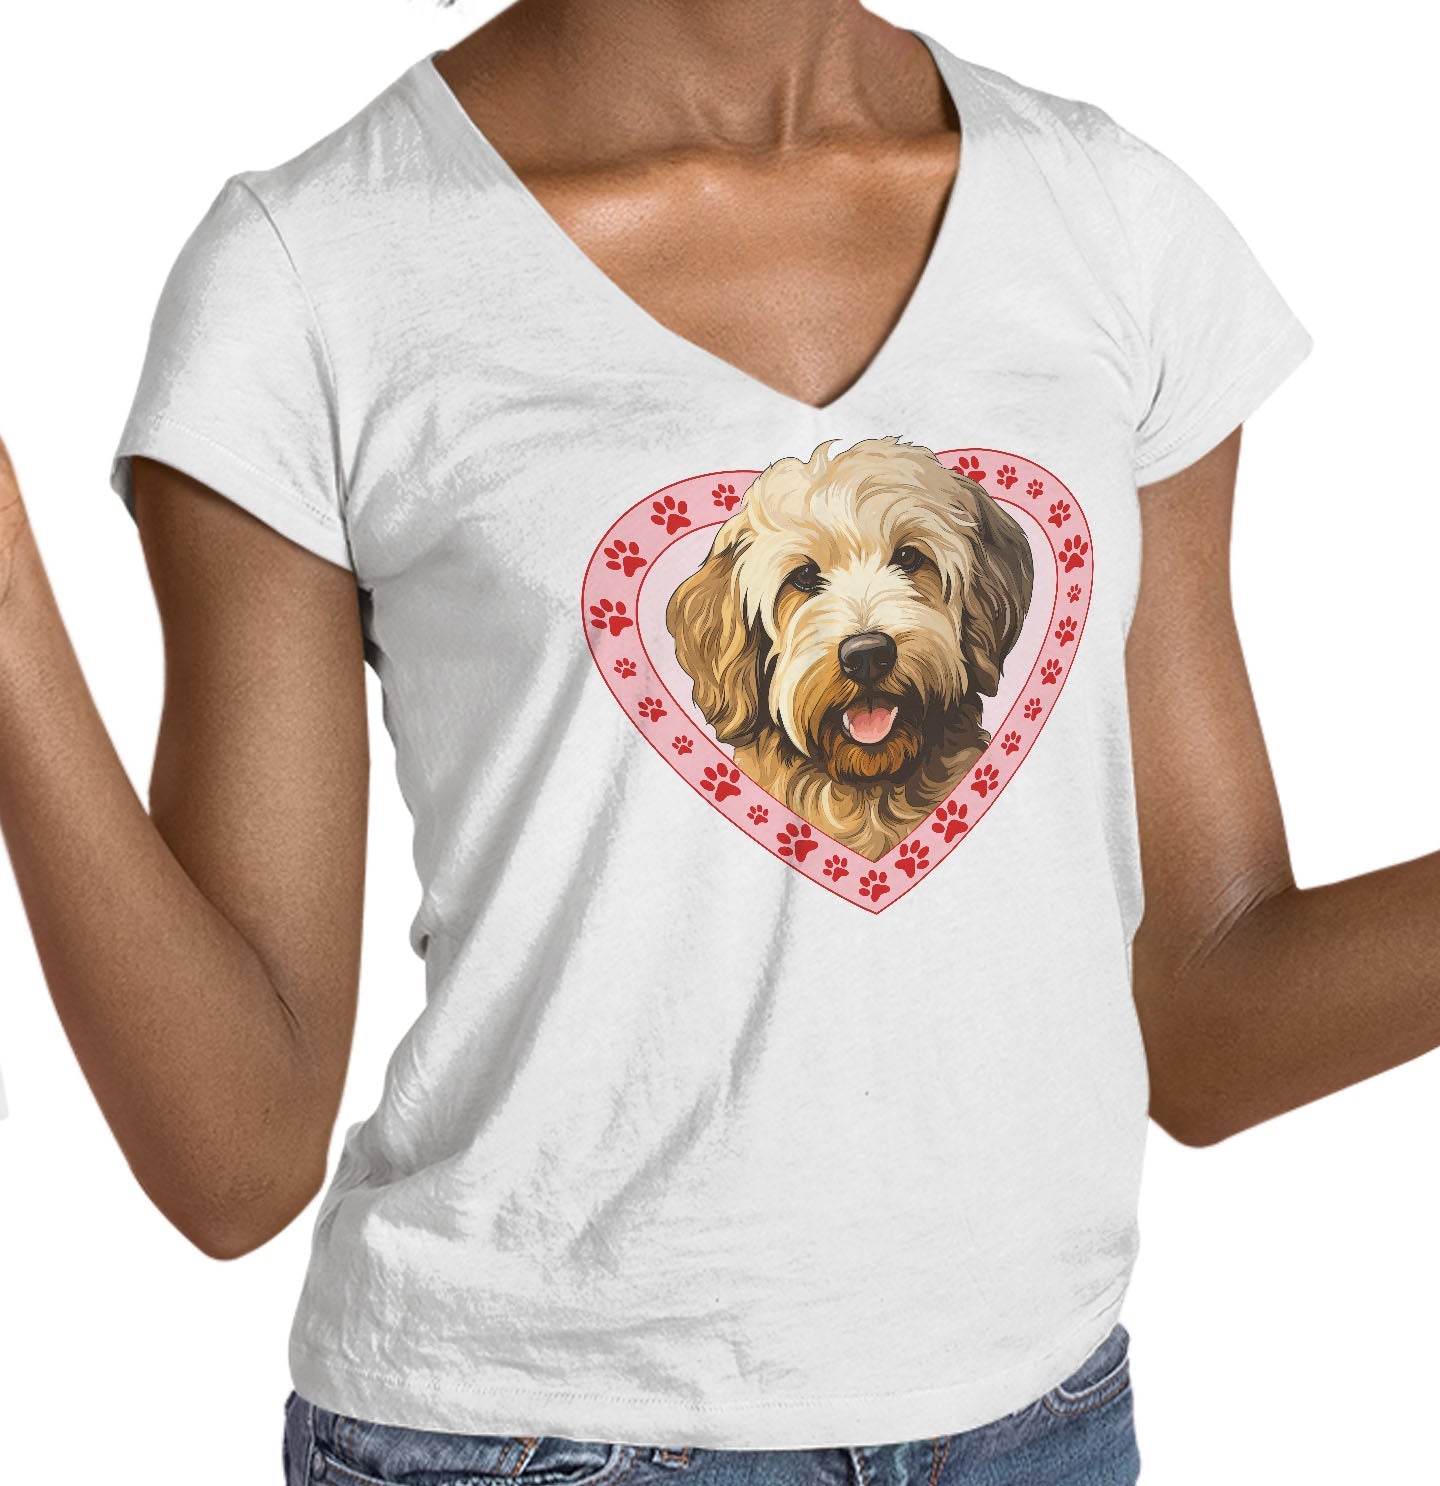 Goldendoodle Illustration In Heart - Women's V-Neck T-Shirt